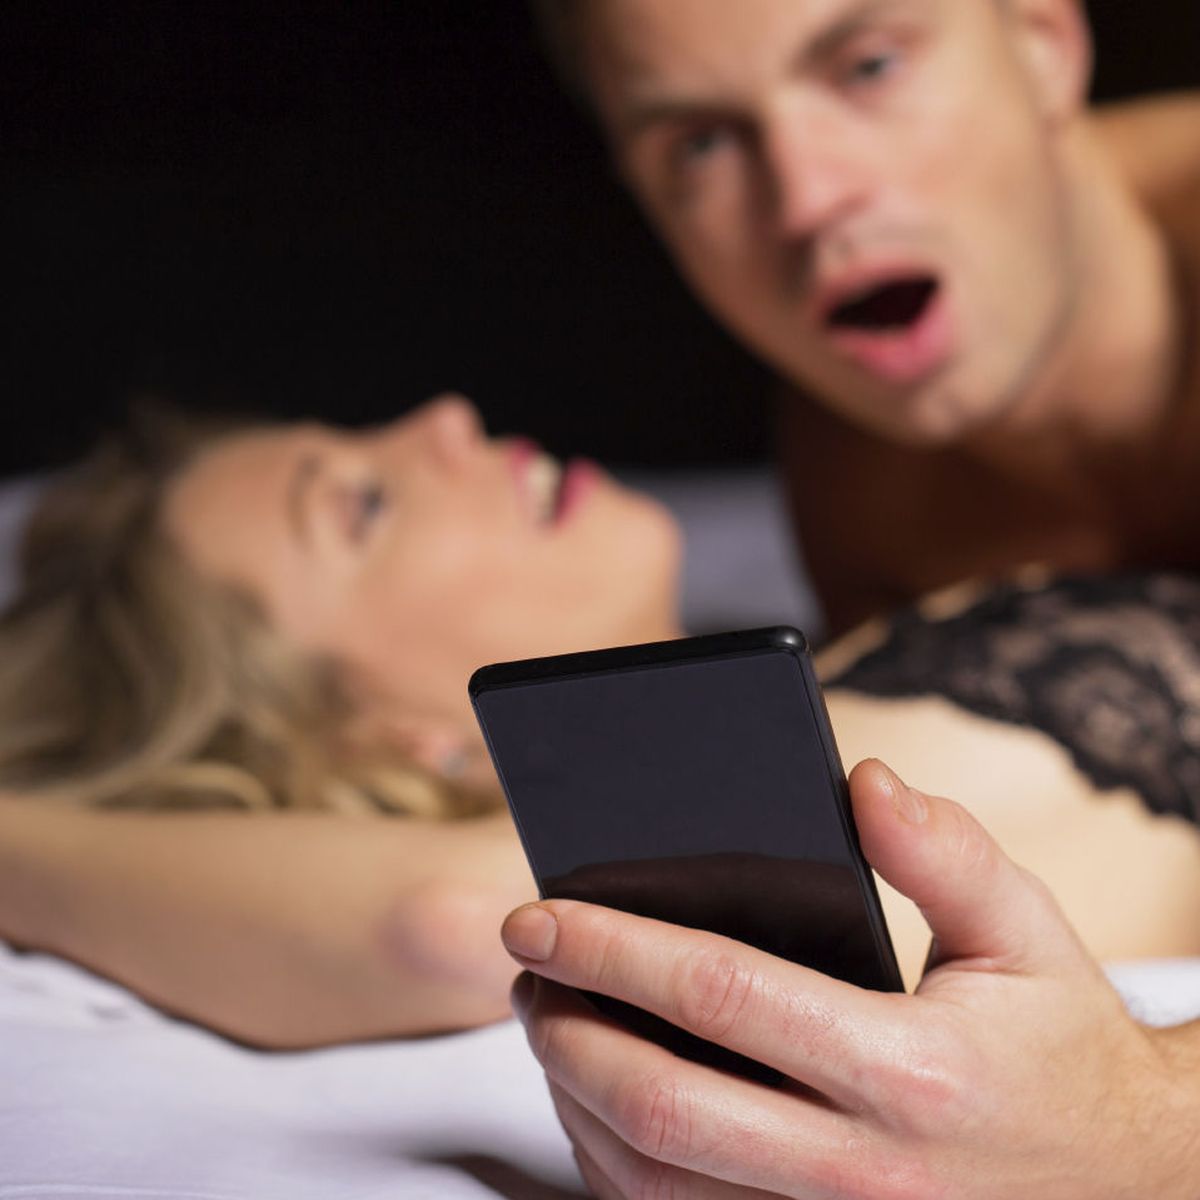 Lo Obliga A Correrse Dentro Porno - Estas son las caras y gestos que ponemos cuando tenemos un orgasmo